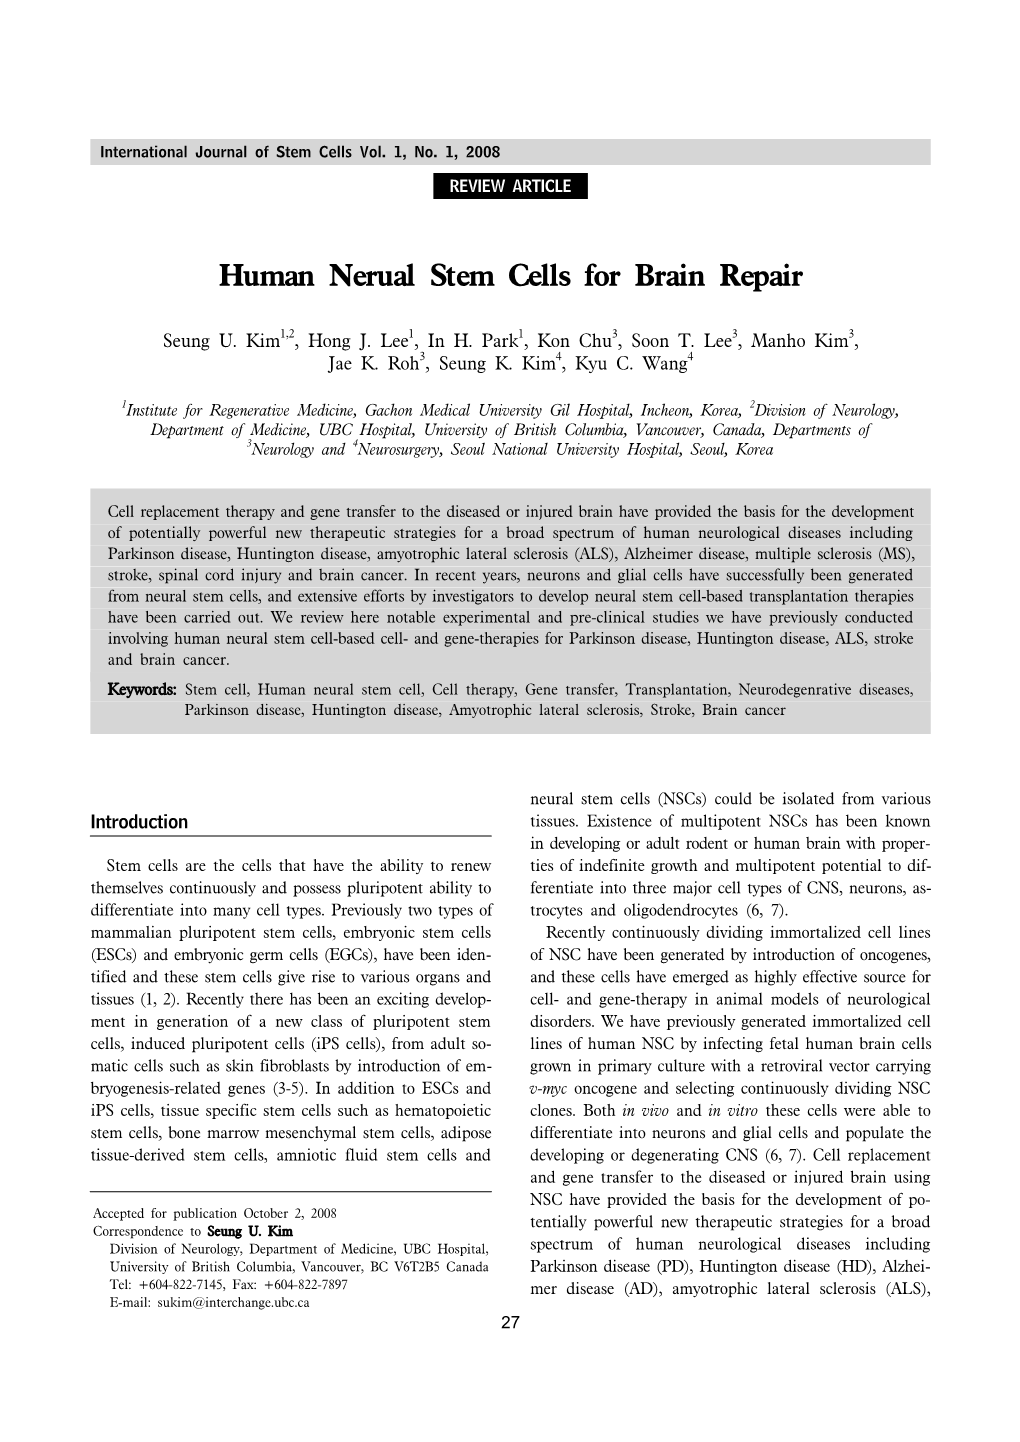 Human Nerual Stem Cells for Brain Repair